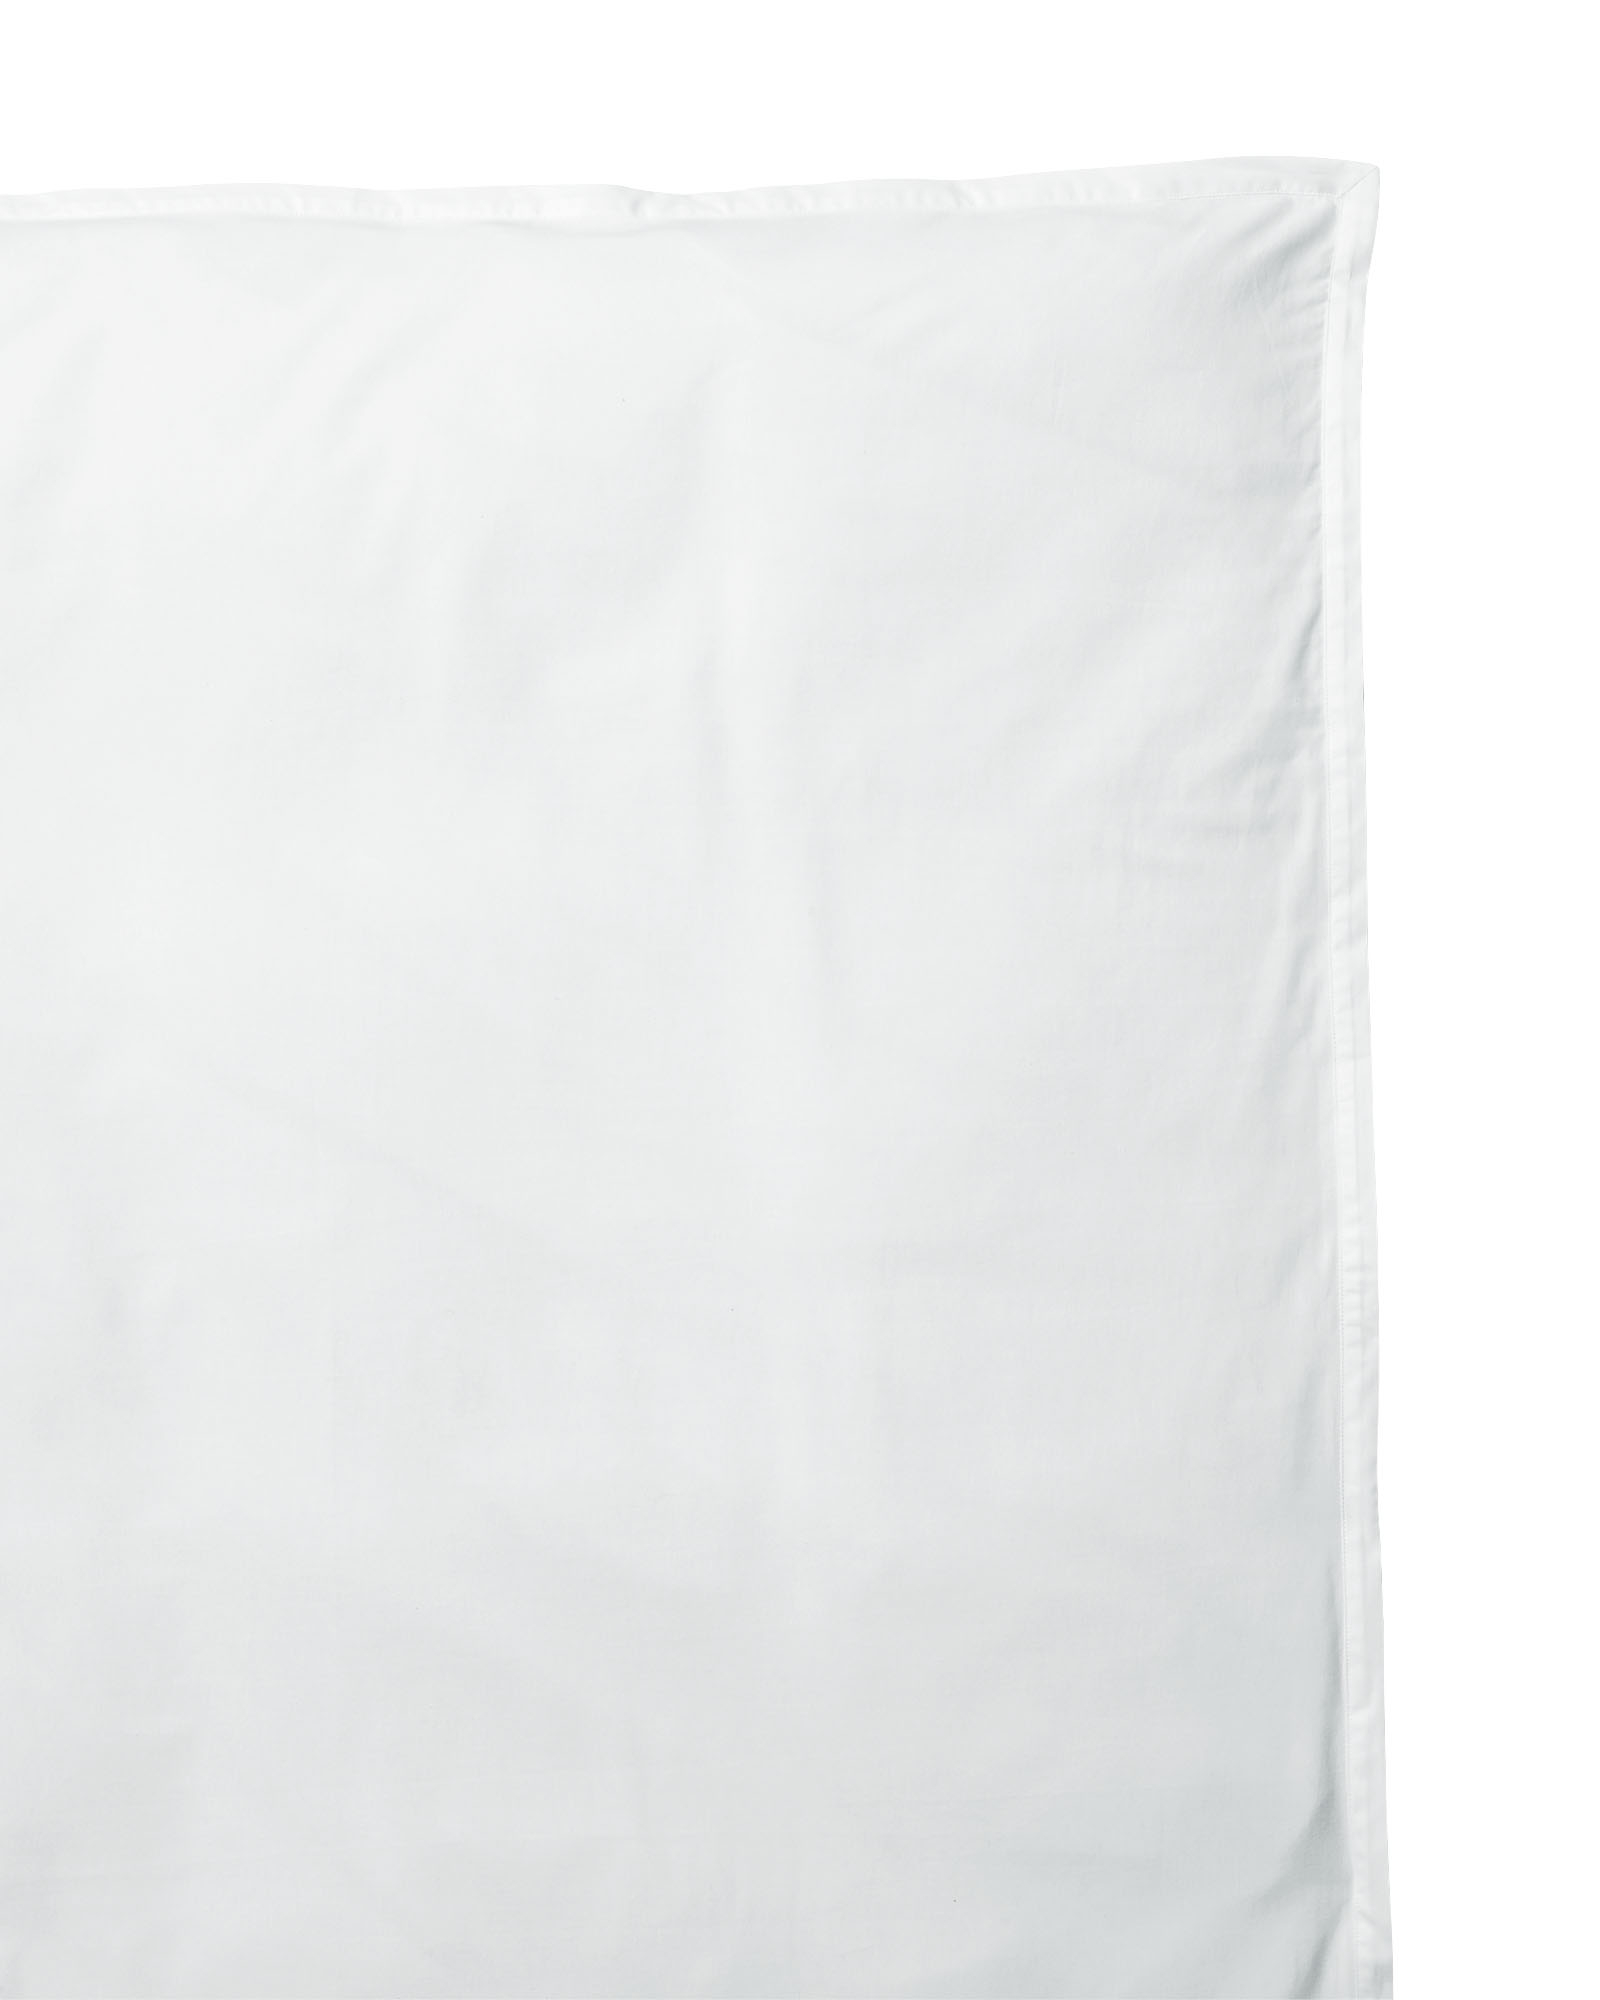 Wainscott Oxford Weave Duvet Cover - King (White) - Image 0